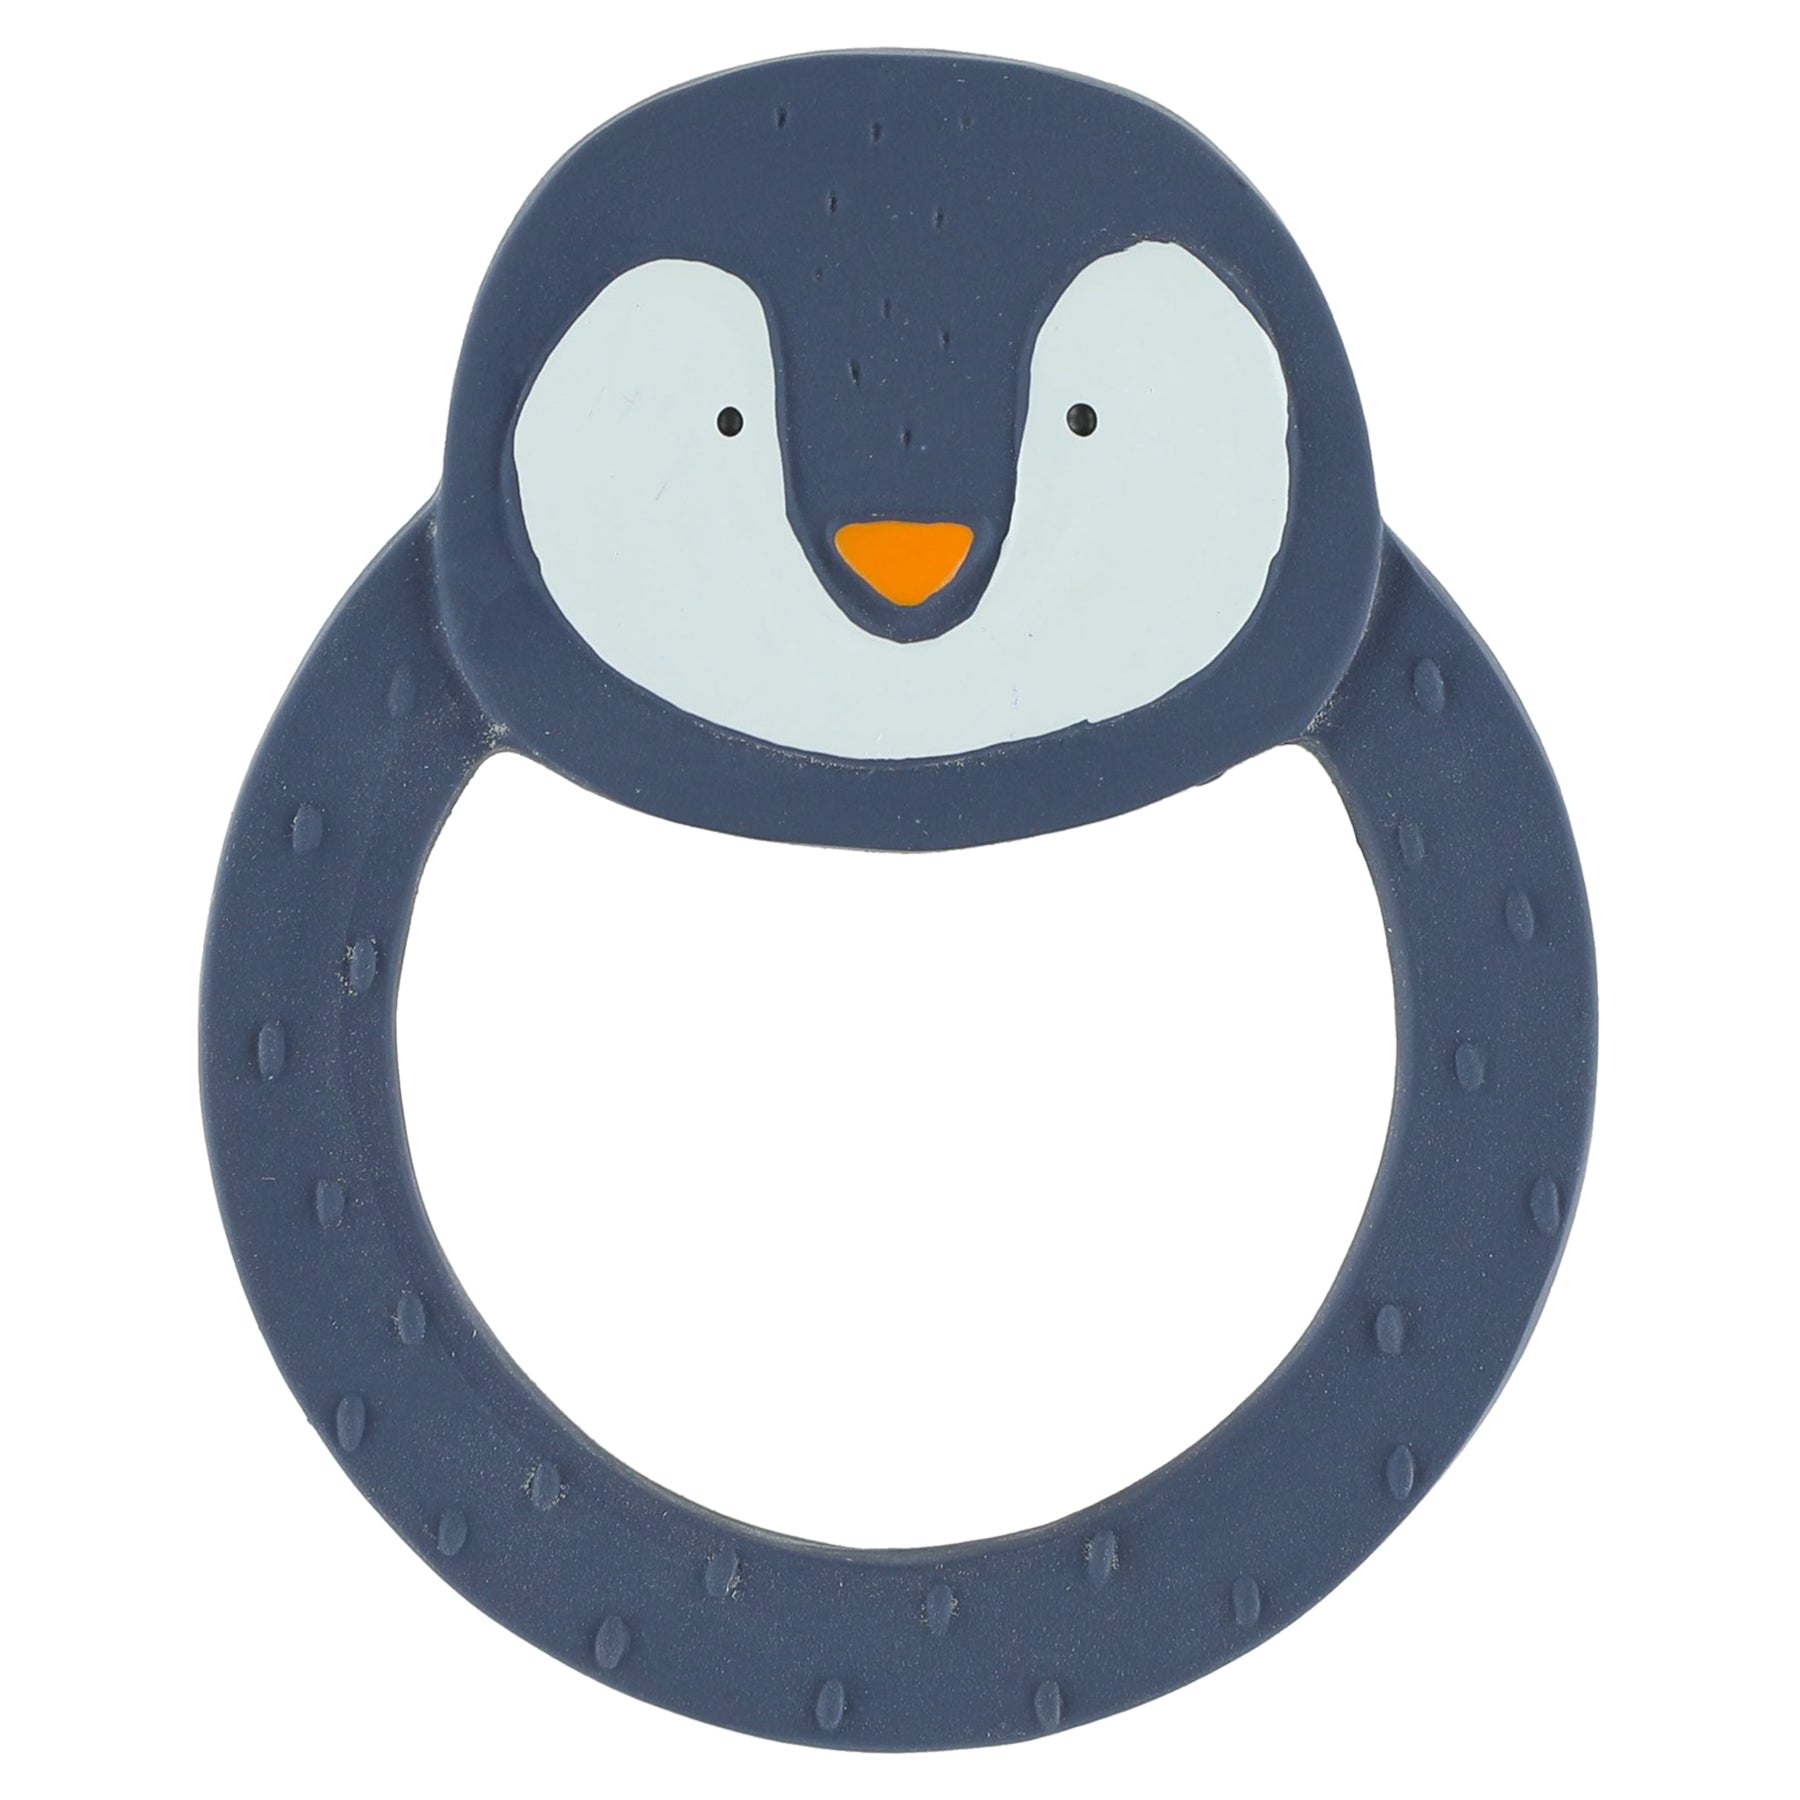 Trixie Mr. Penguin's Runder Beißring - Das perfekte Vergnügen für neugierige Babys! 🐧